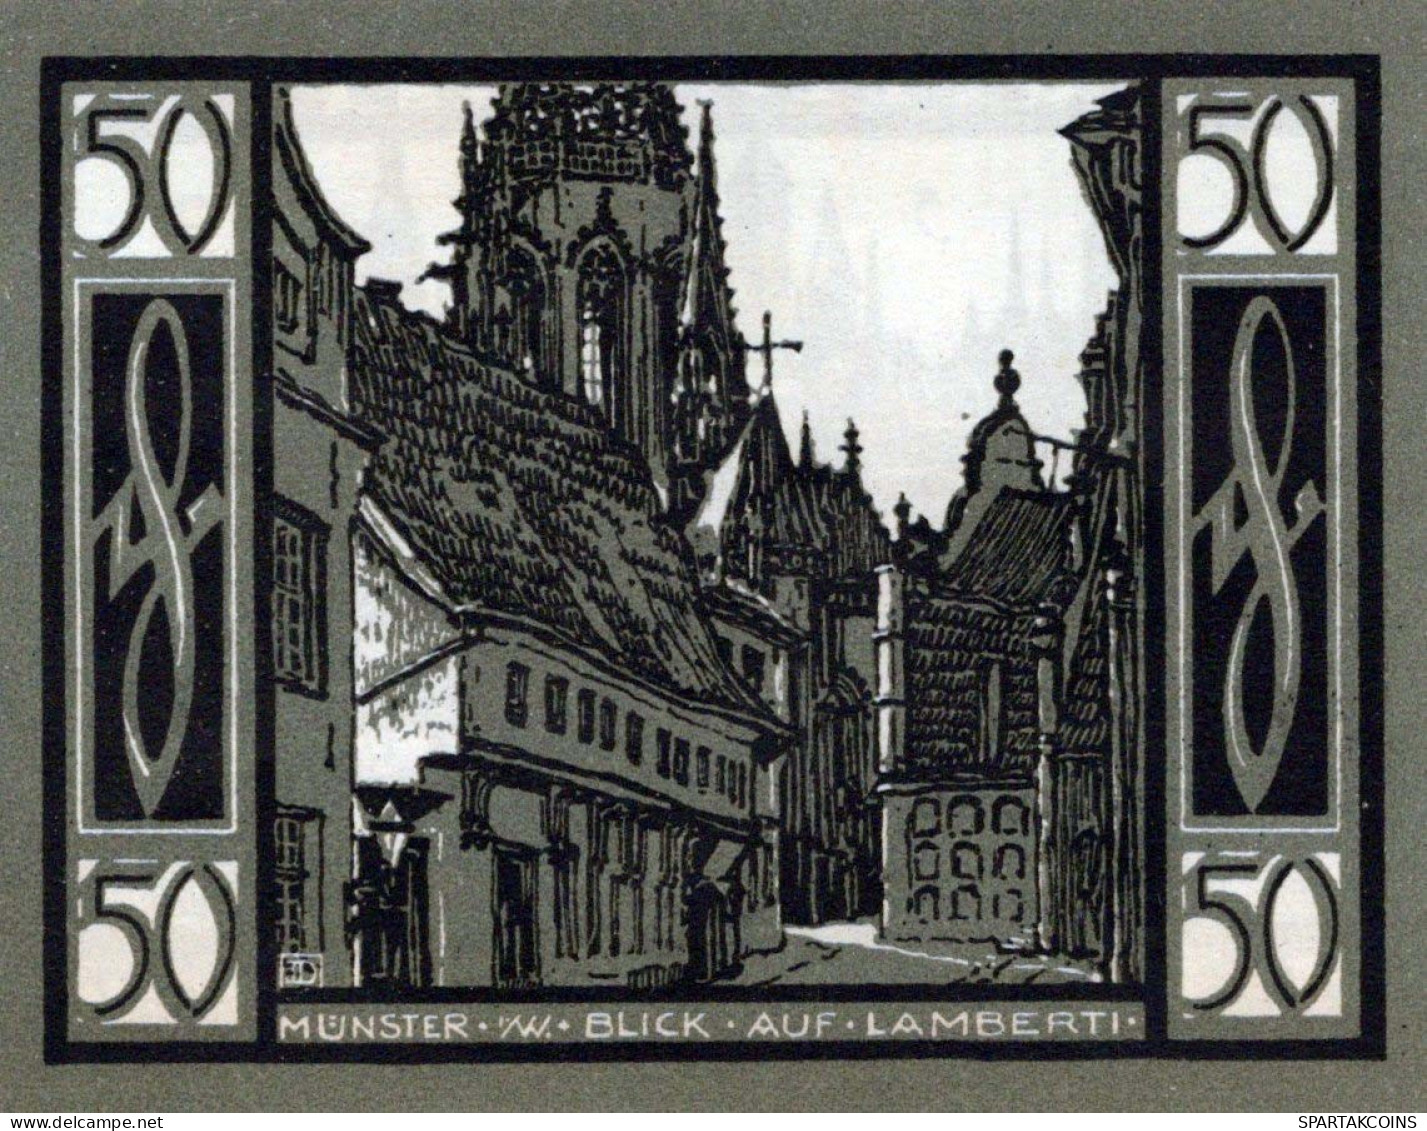 50 PFENNIG 1921 Stadt MÜNSTER IN WESTFALEN Westphalia UNC DEUTSCHLAND #PH968 - [11] Local Banknote Issues